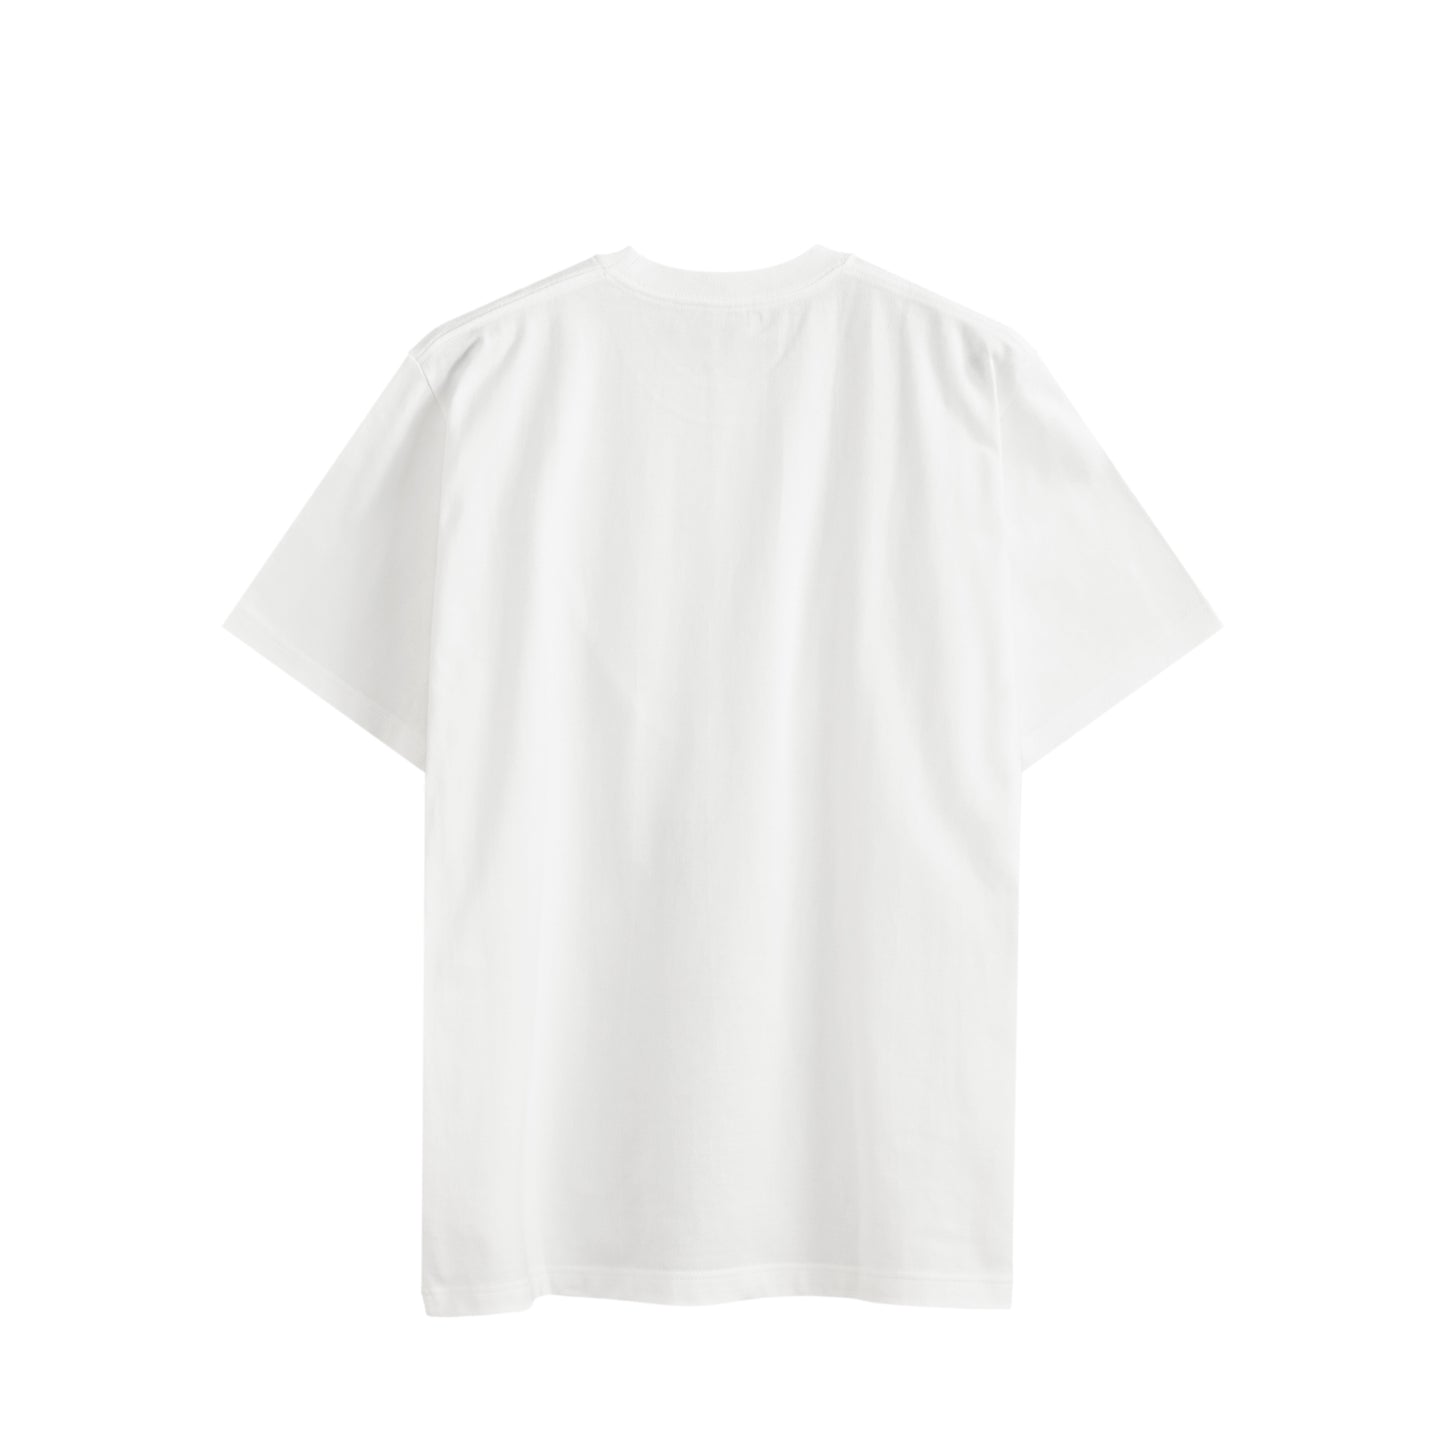 【限定生産】Premium Col. / Royal Smooth T-shirt